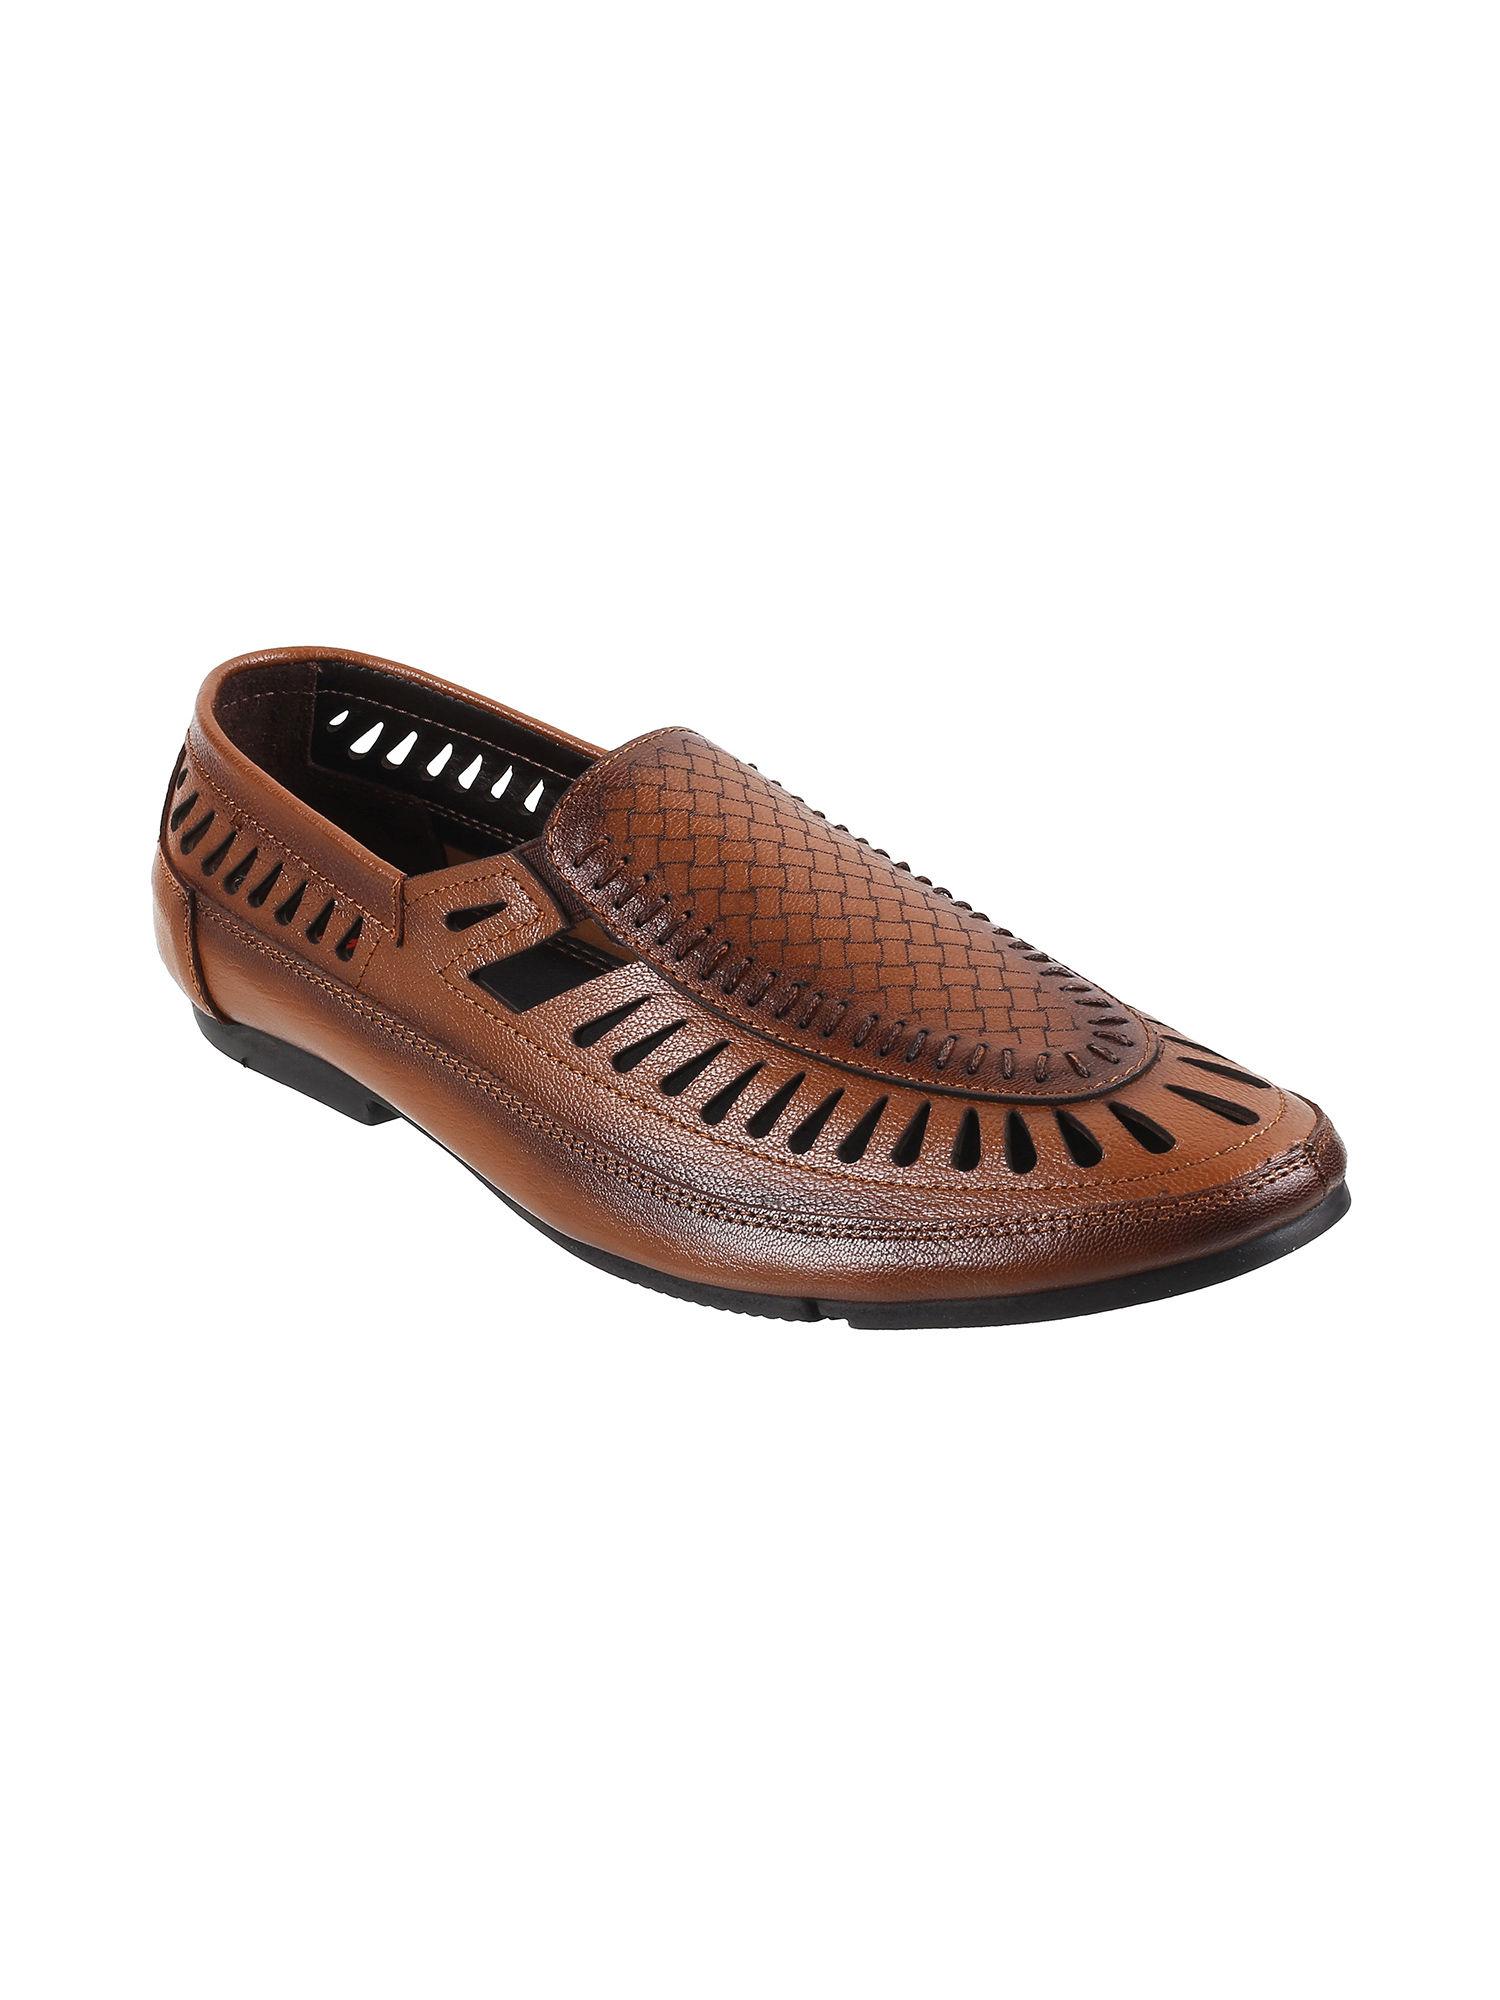 men-leather-tan-sandals